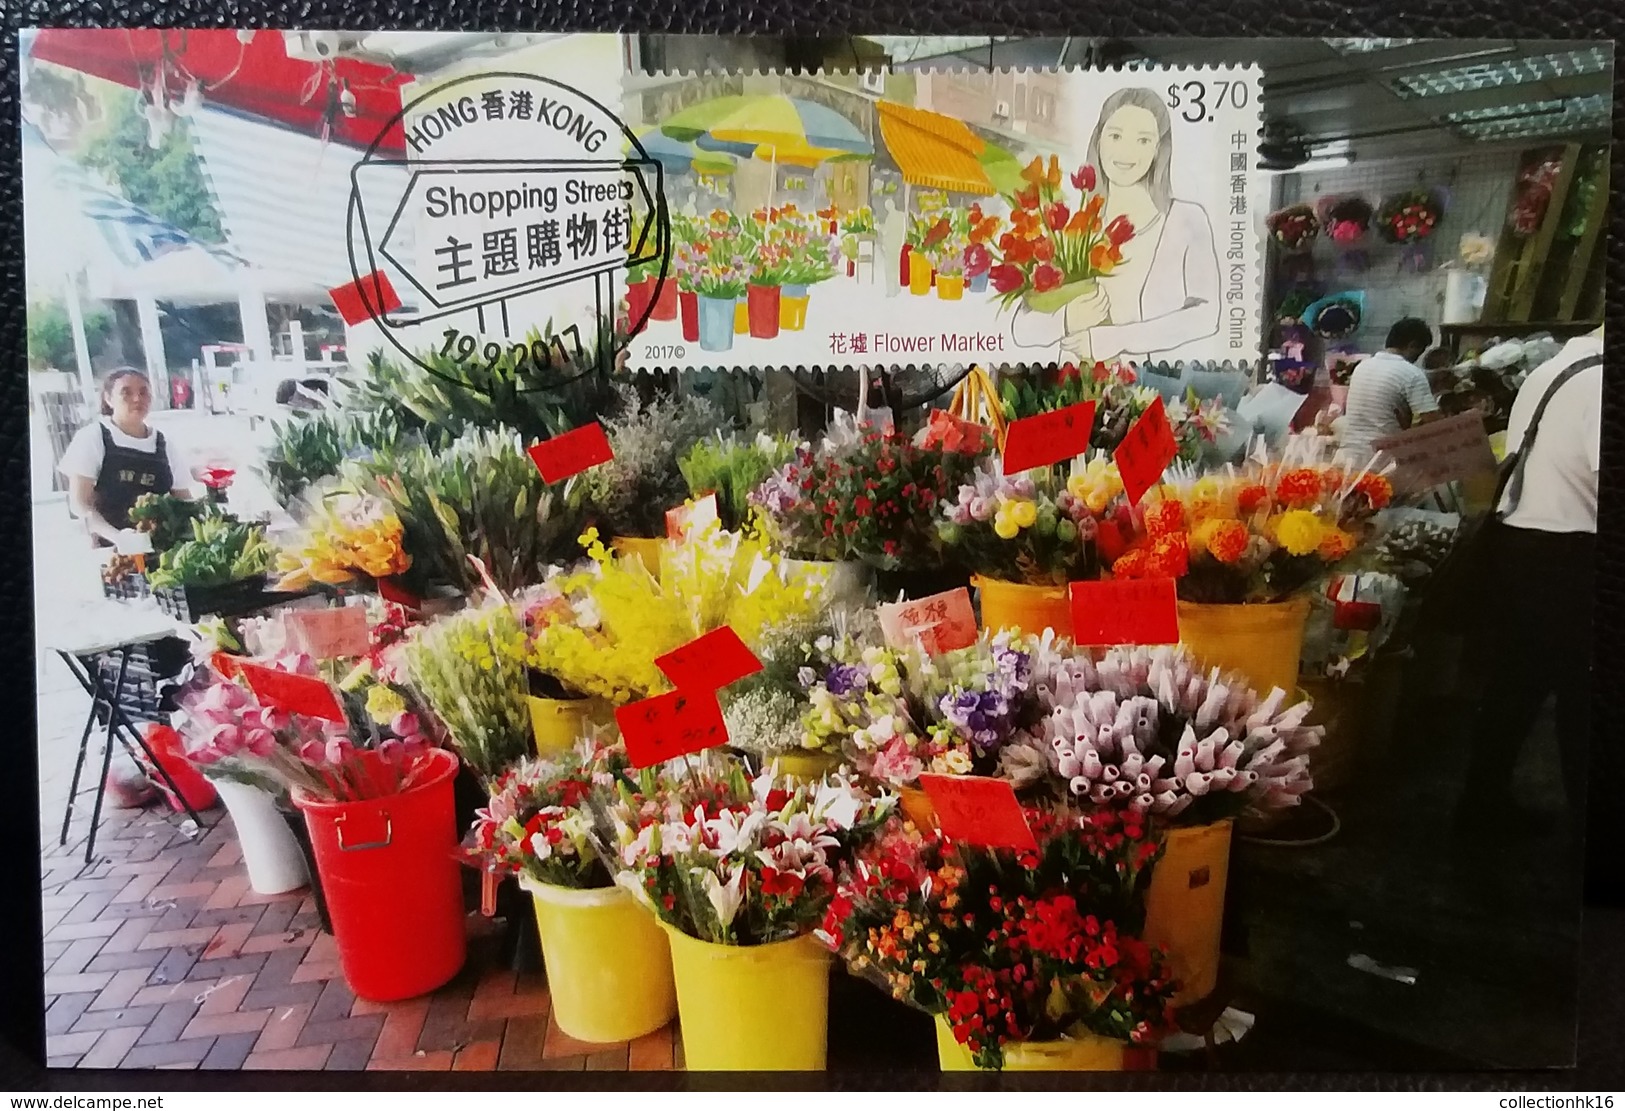 Hong Kong Shopping Streets (Fruit, Flower, Jade ...) 2017 Hong Kong Maximum card MC Set (Pictorial Postmark) (6 cards)